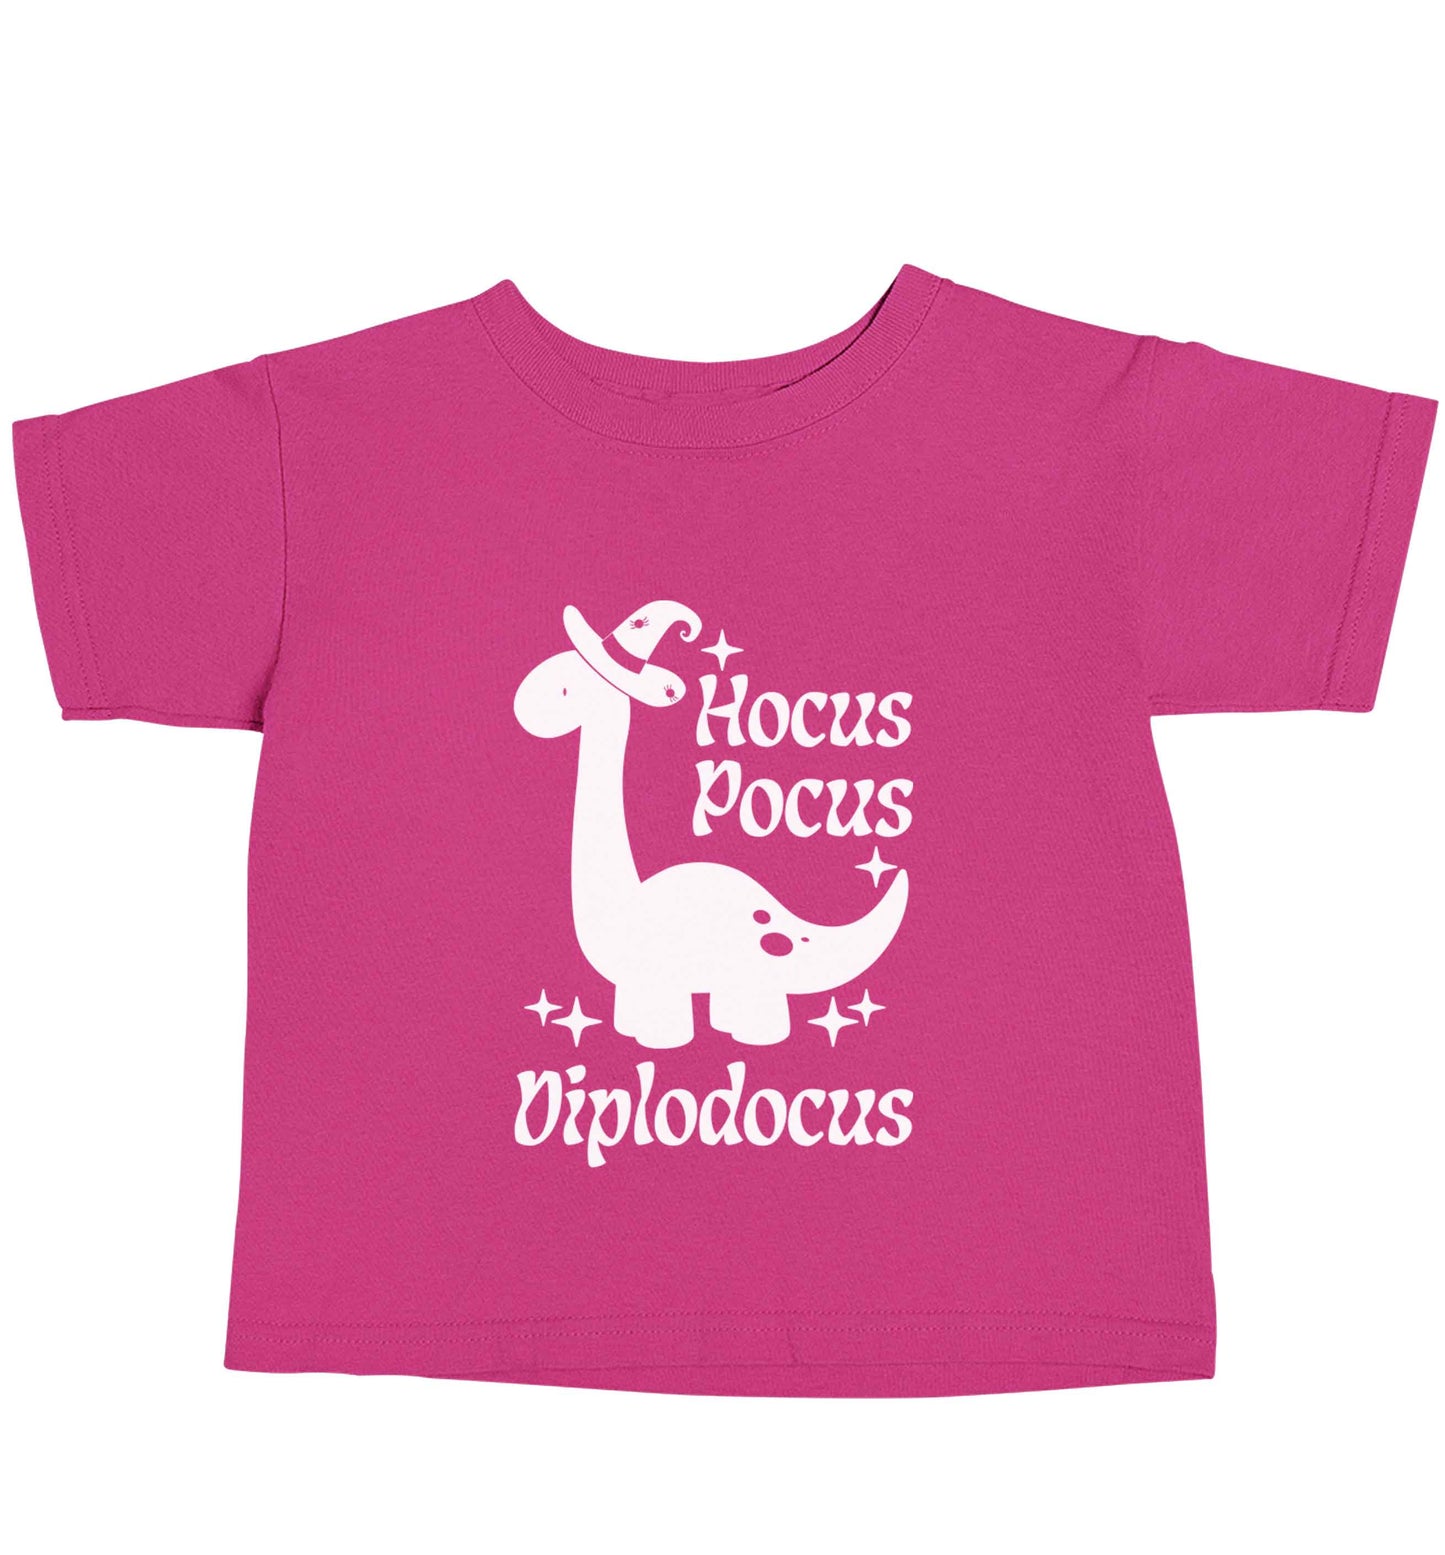 Hocus pocus diplodocus Kit pink baby toddler Tshirt 2 Years